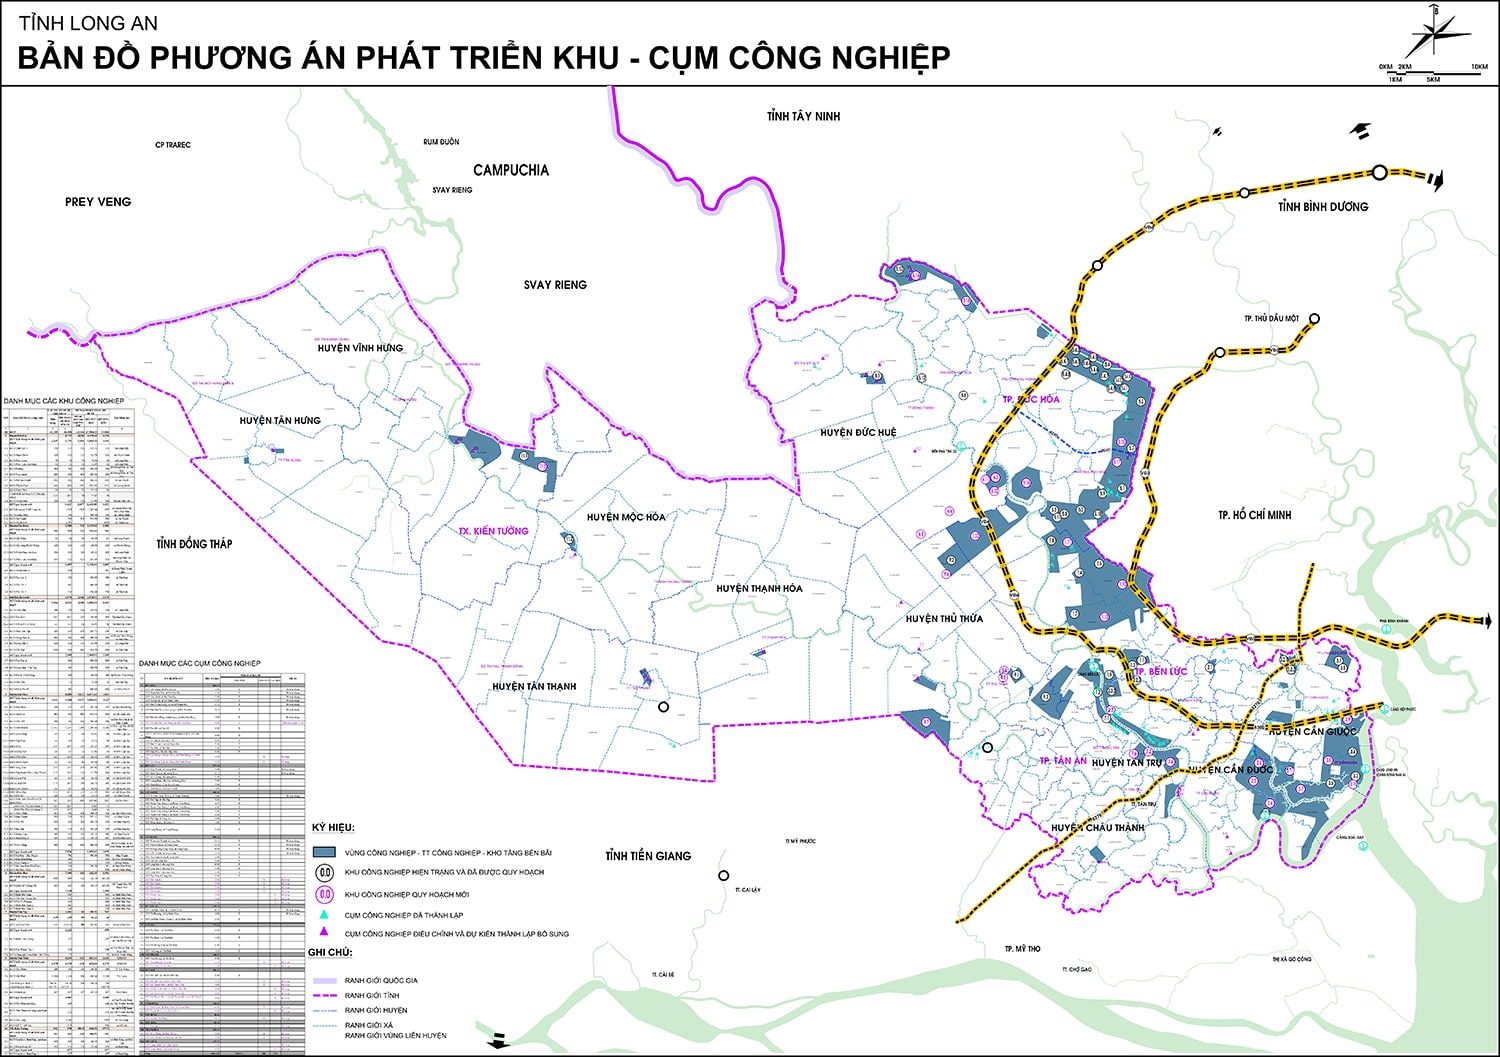 Phương án quy hoạch khu, cụm công nghiệp tỉnh Long An đến năm 2030